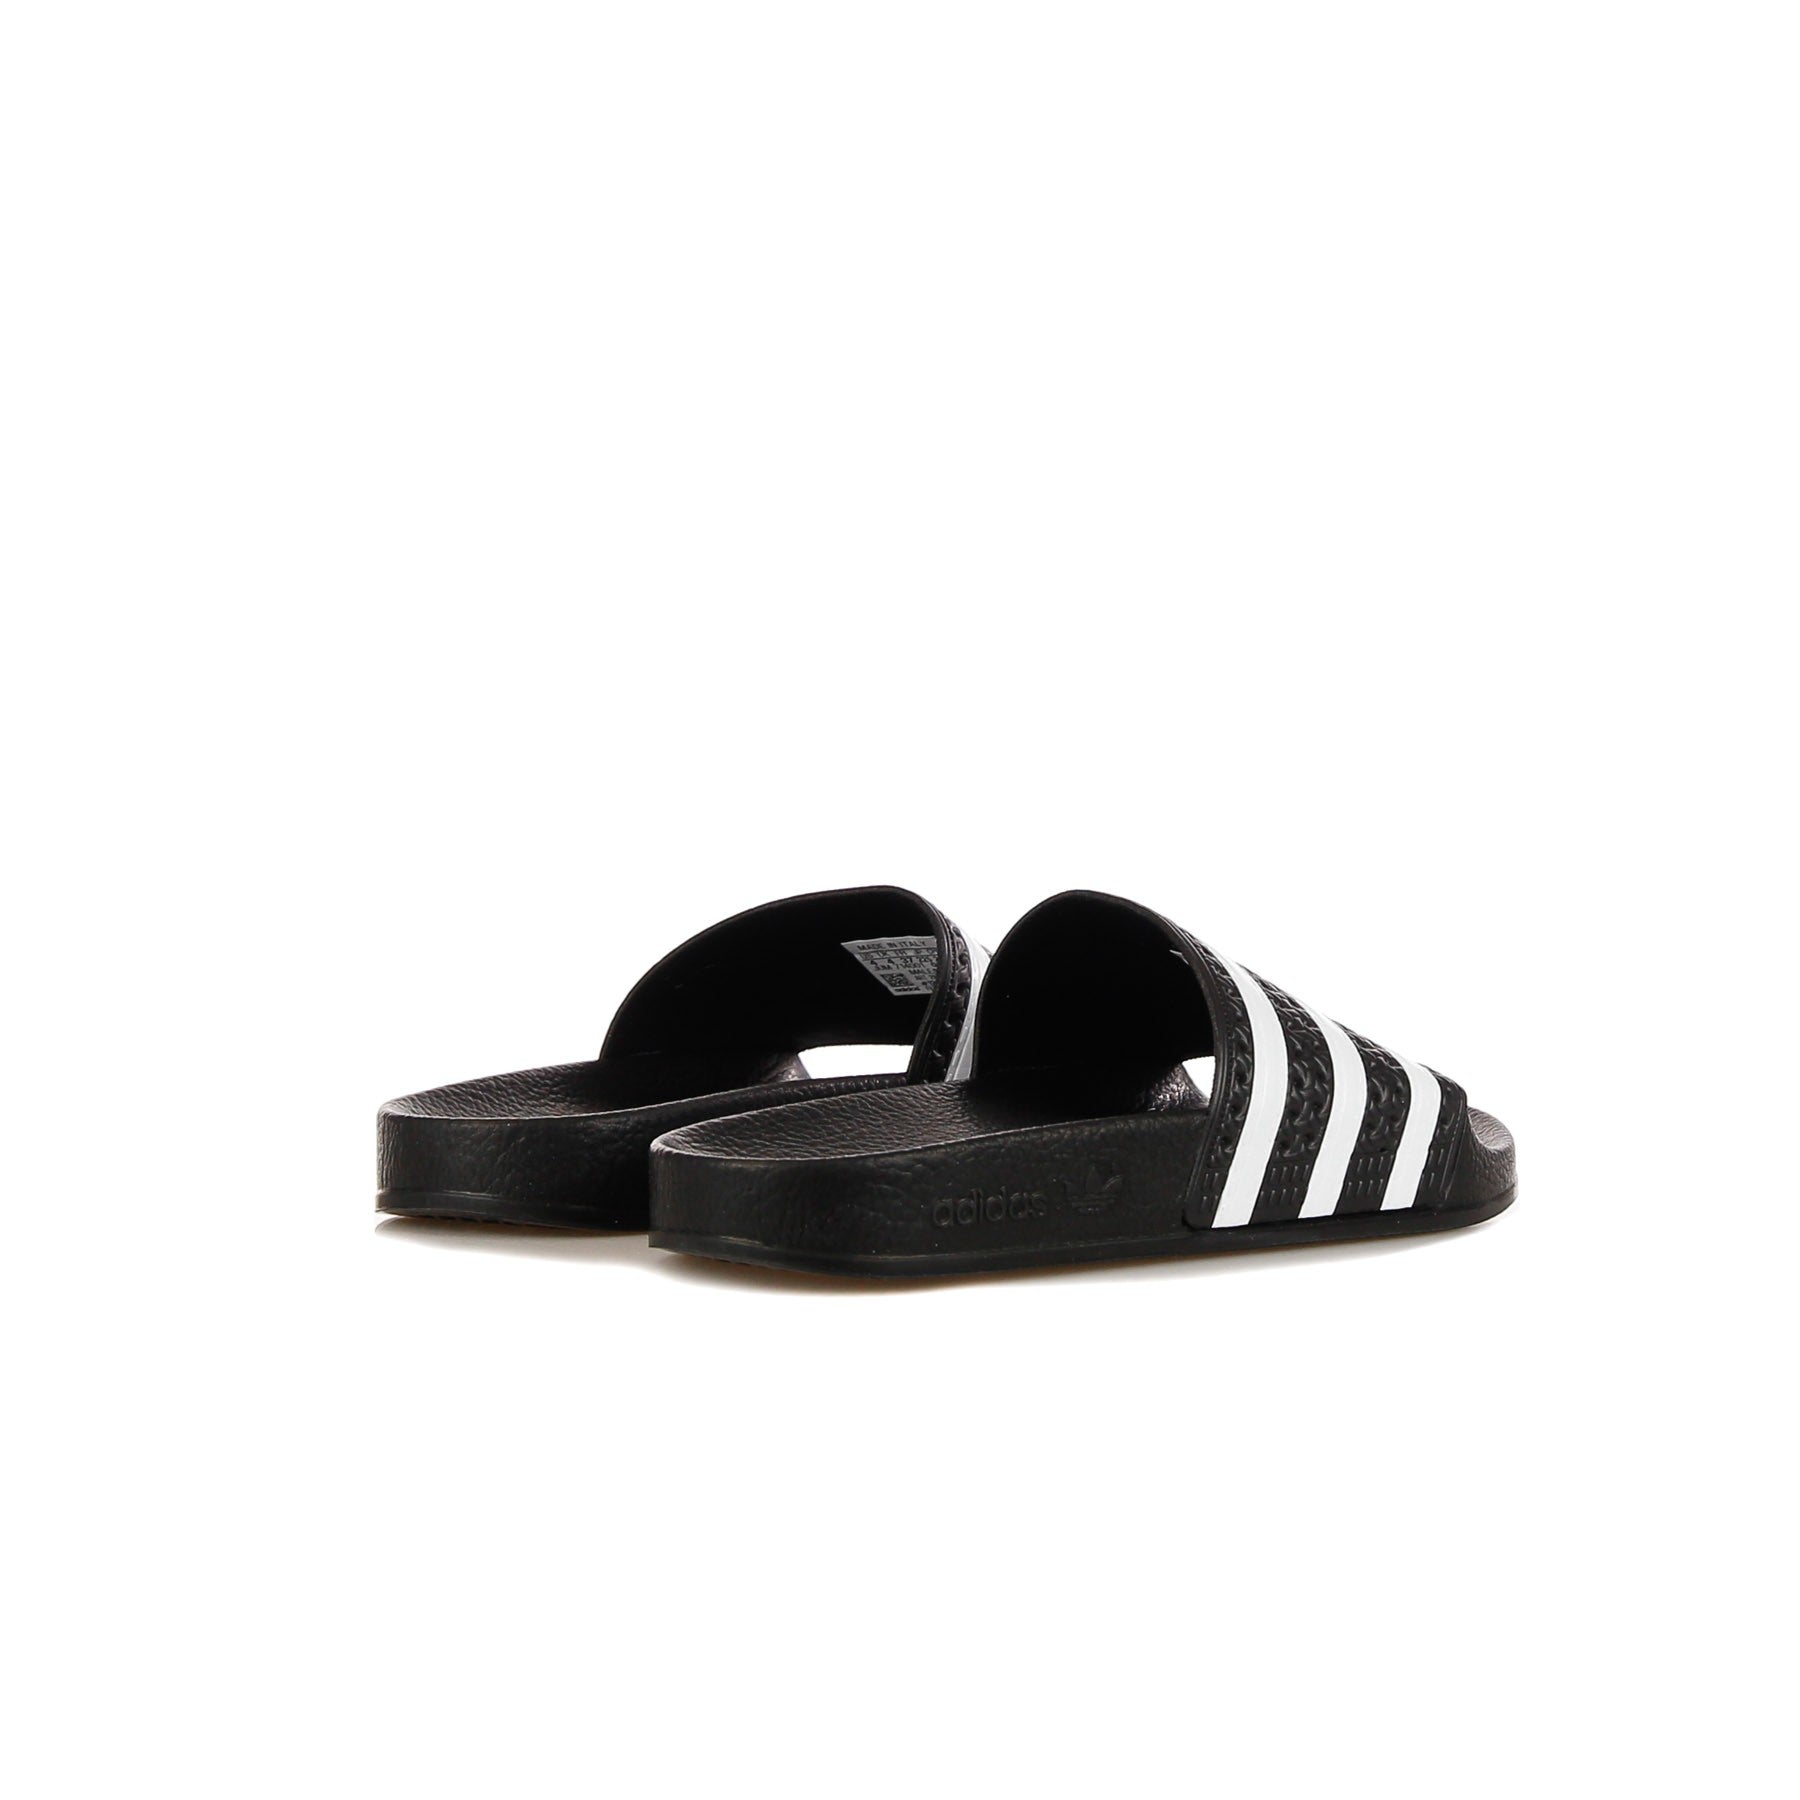 Adilette Men's Slippers Black/white